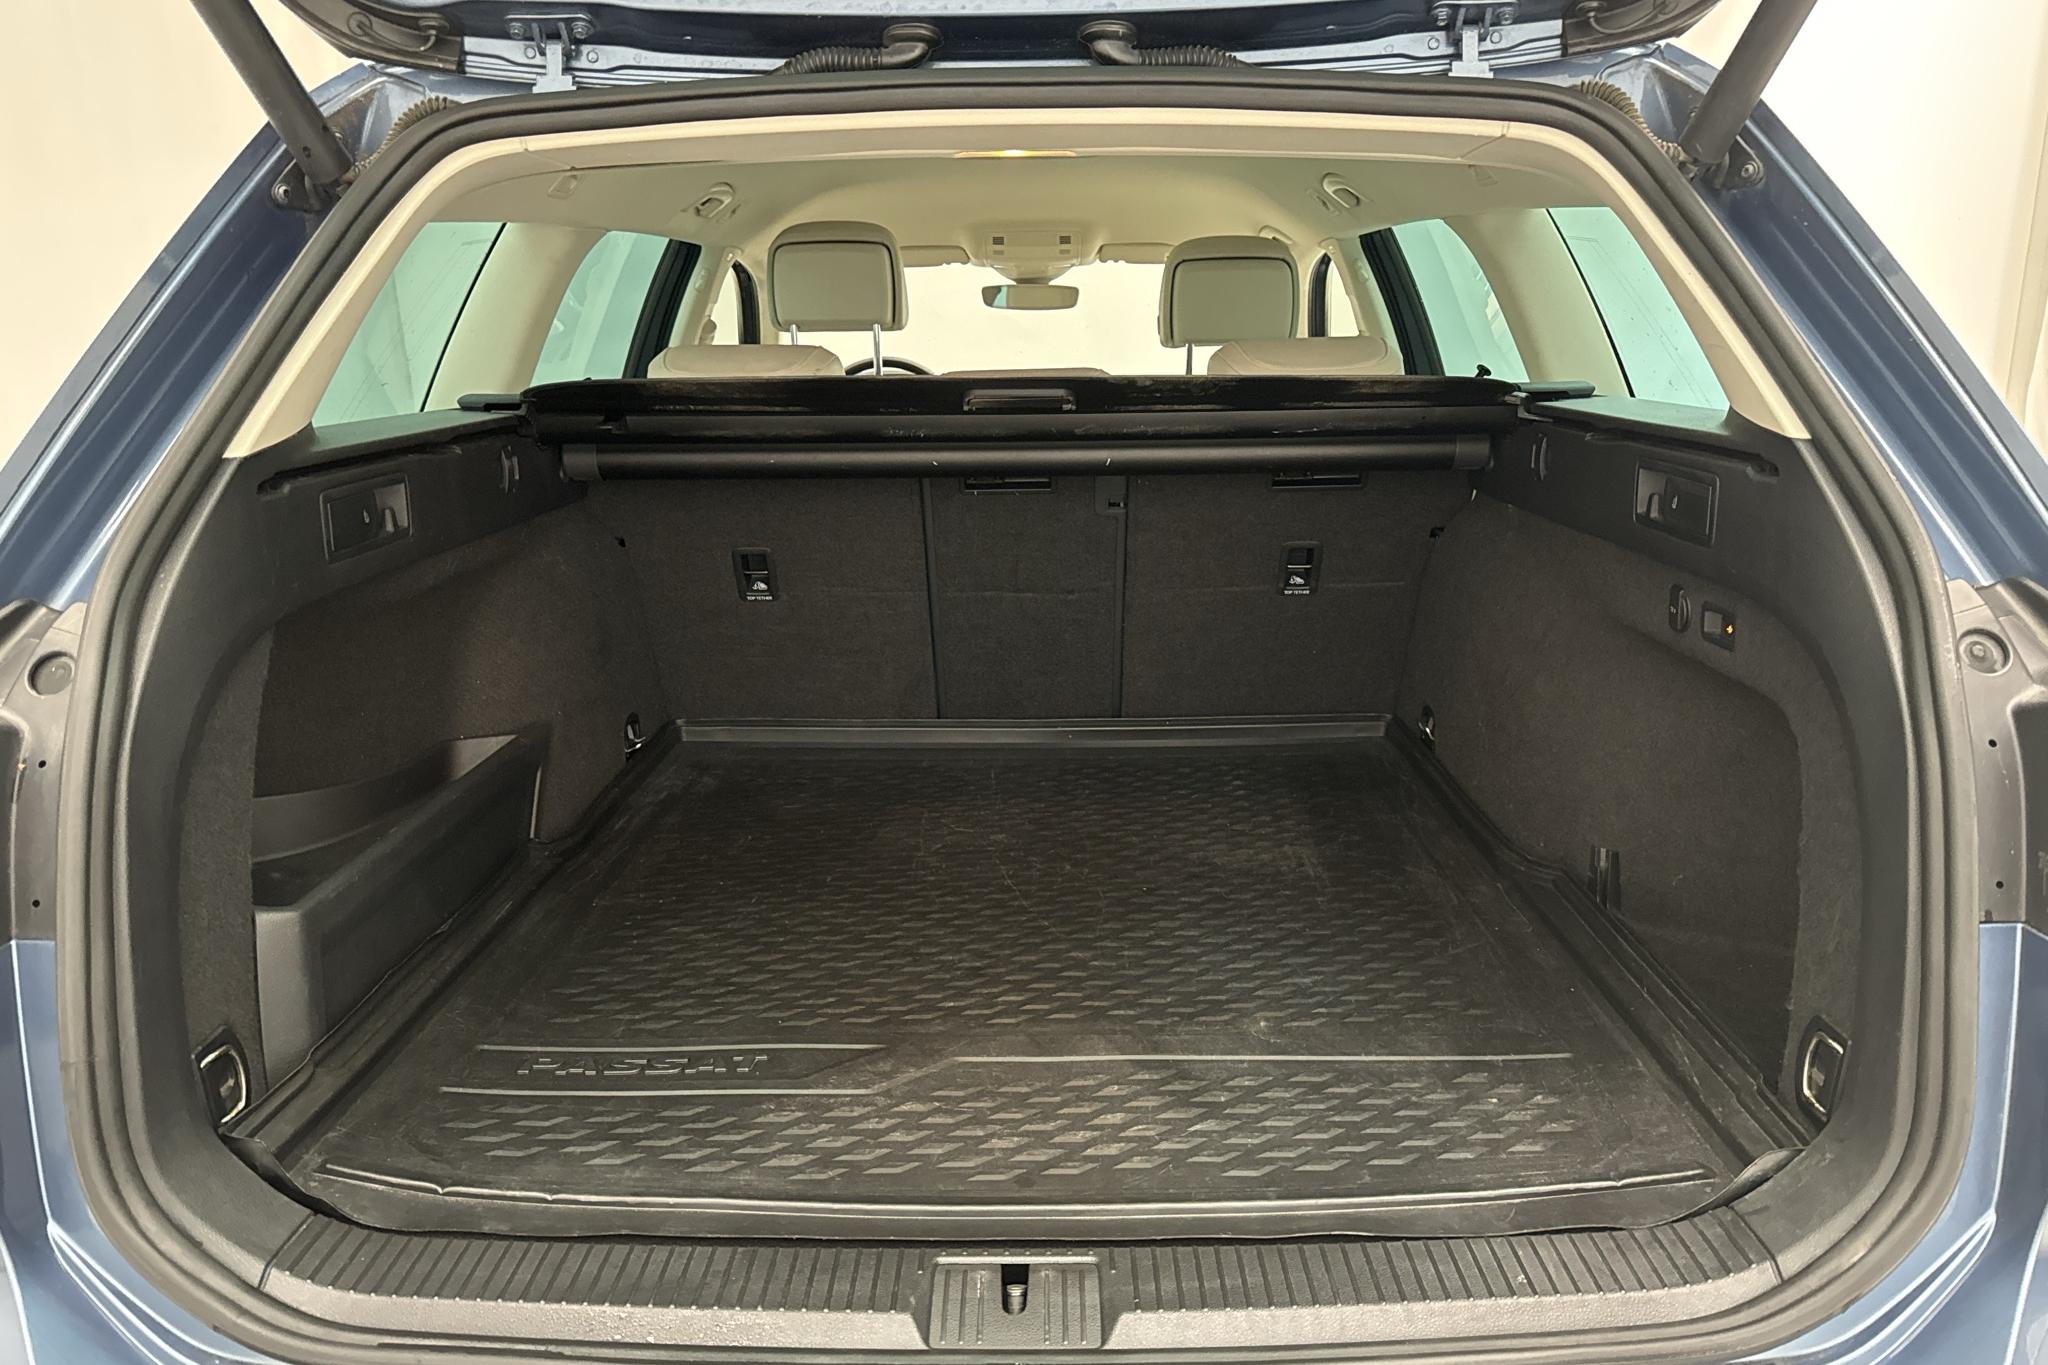 VW Passat 2.0 TDI BiTurbo Sportscombi 4MOTION (240hk) - 15 434 mil - Automat - blå - 2015